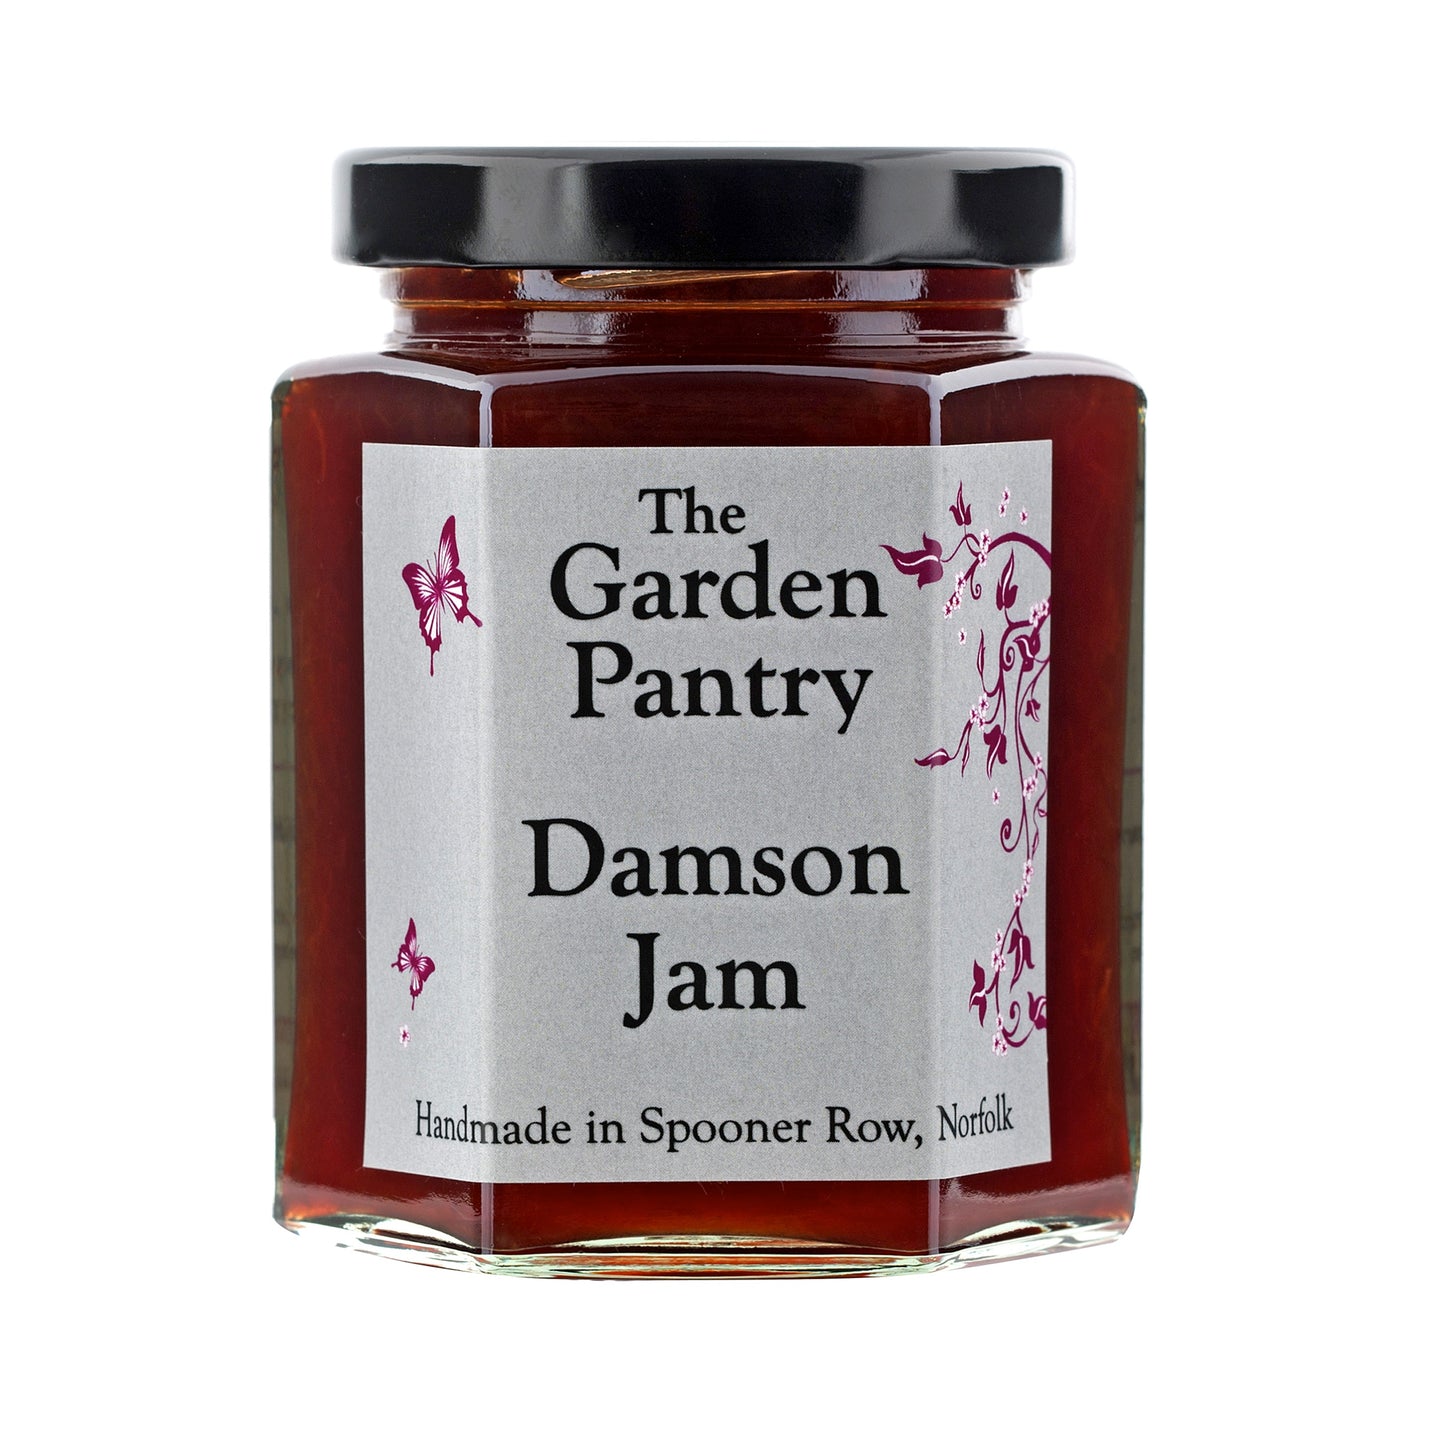 The Garden Pantry Damson Jam